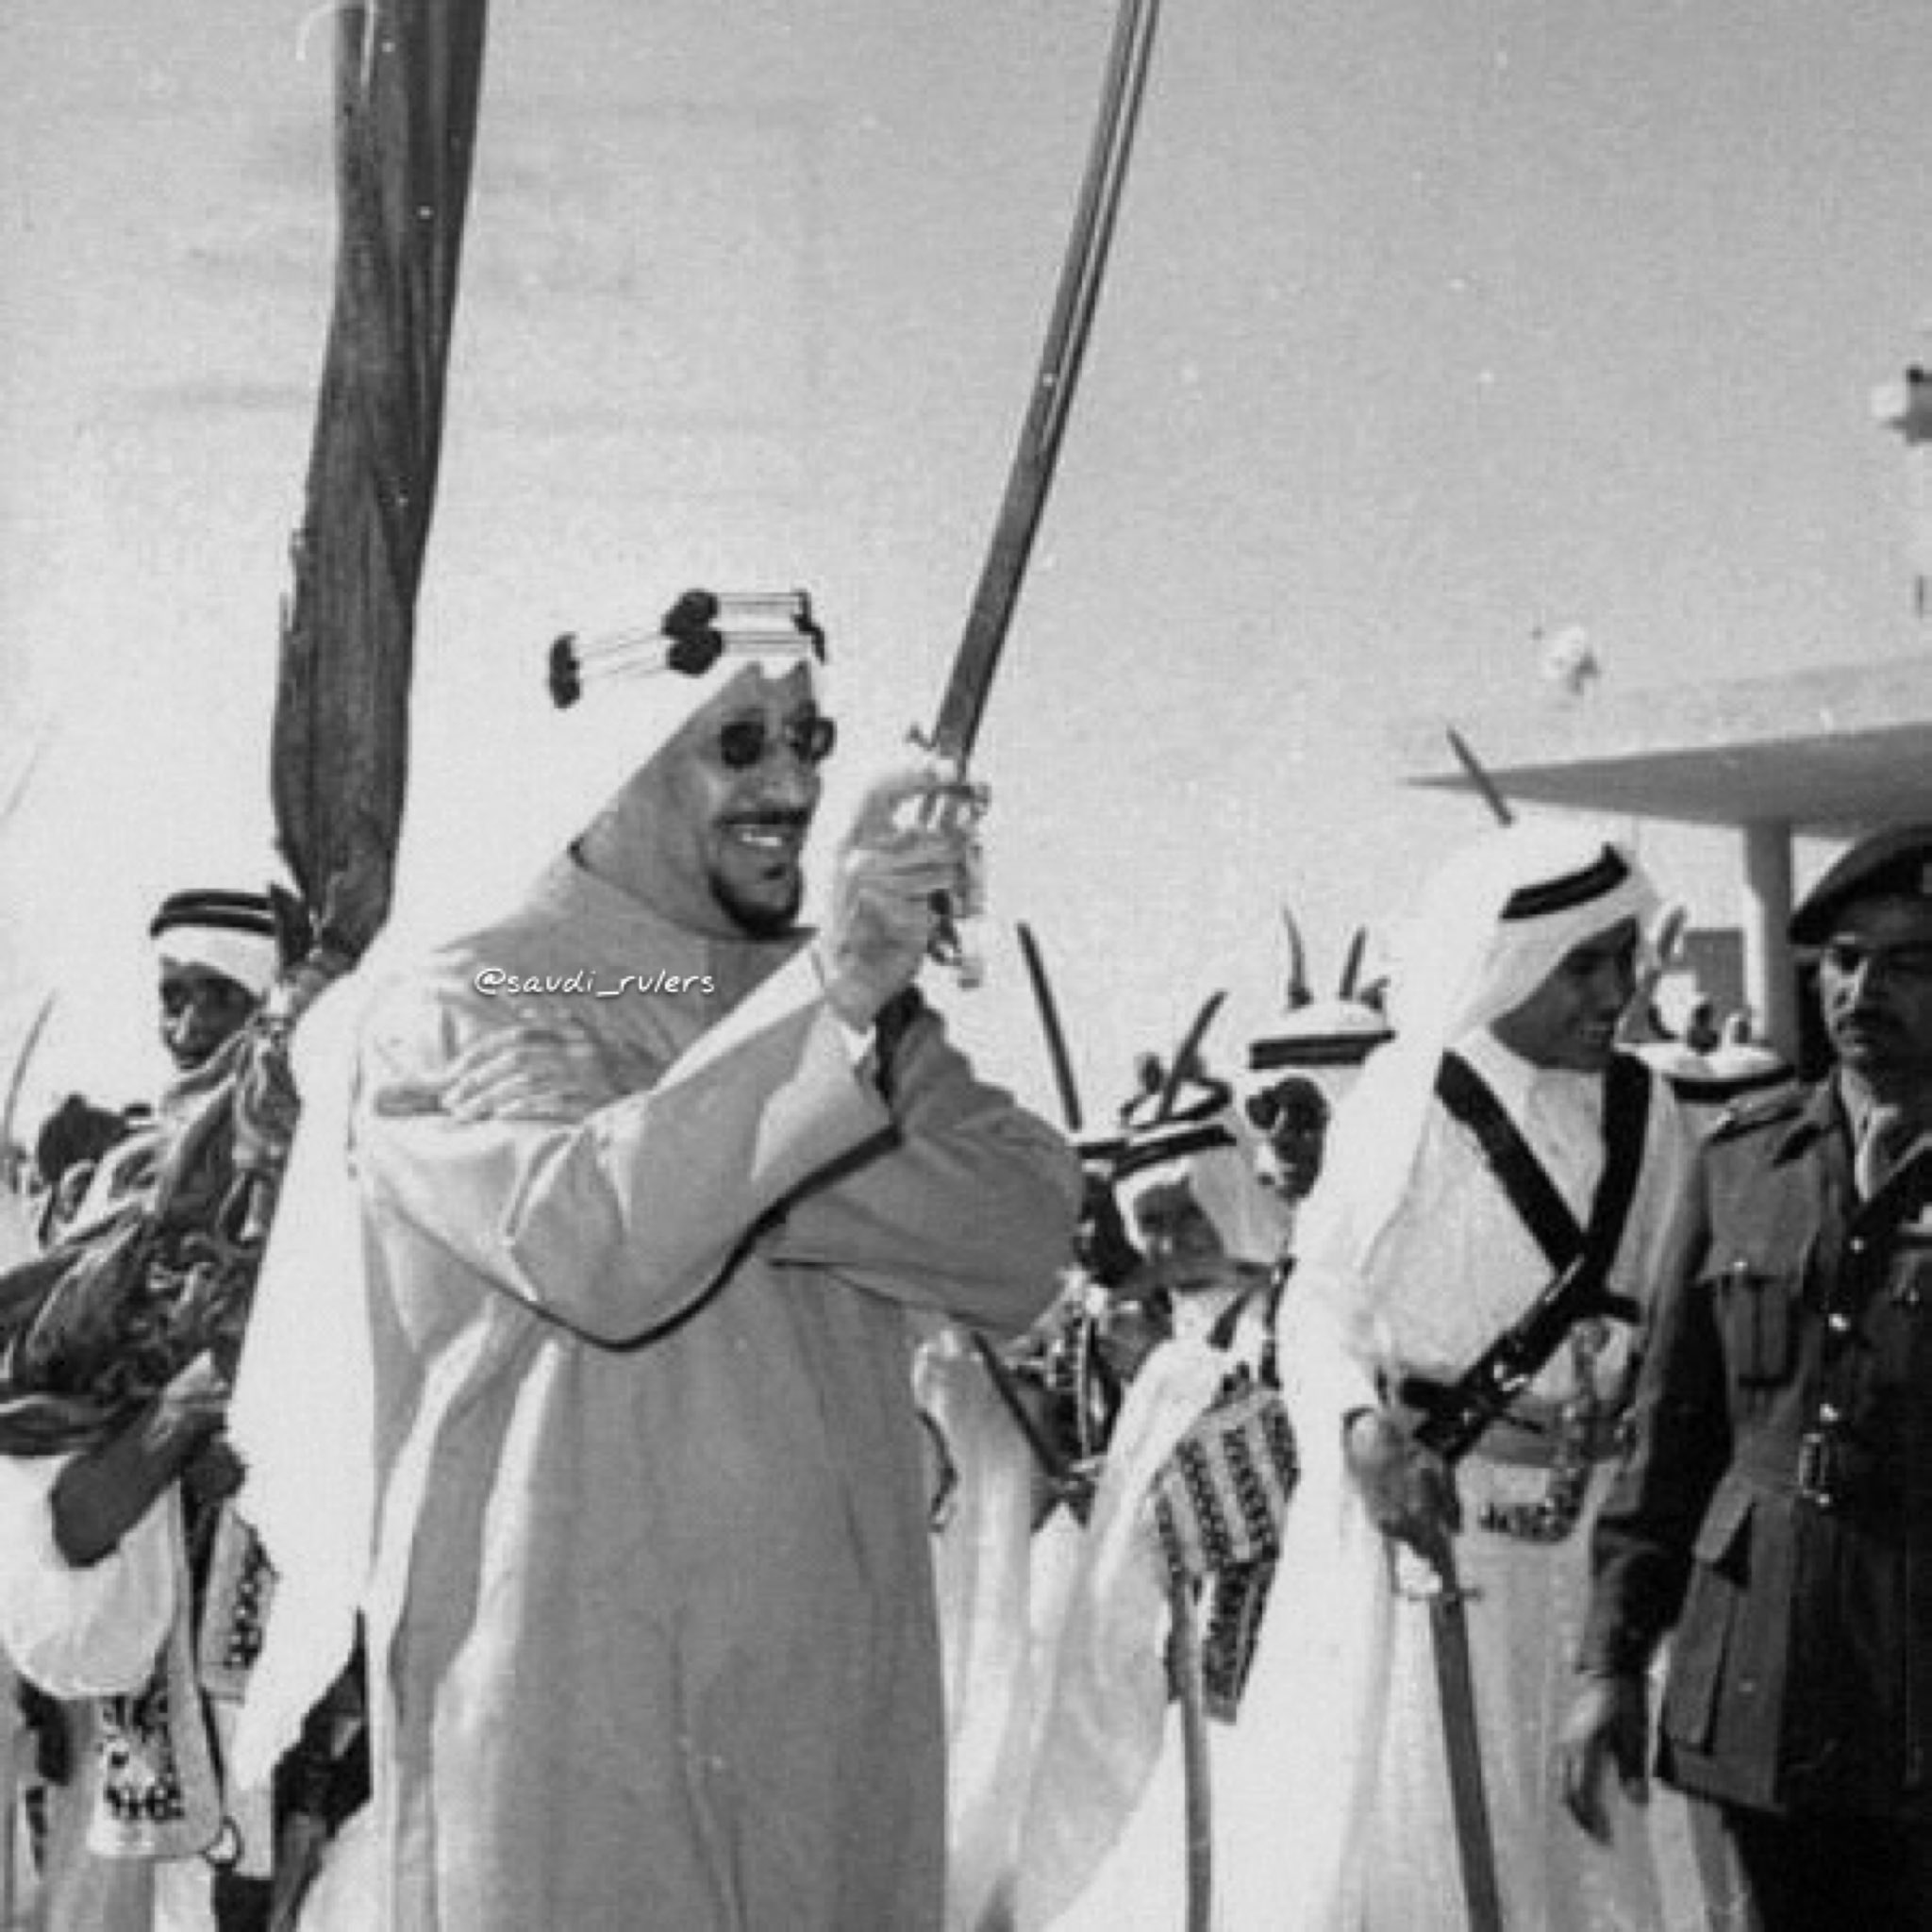 الملك سعود ينضم للرقصة الحربية التقليدية "العرضة"